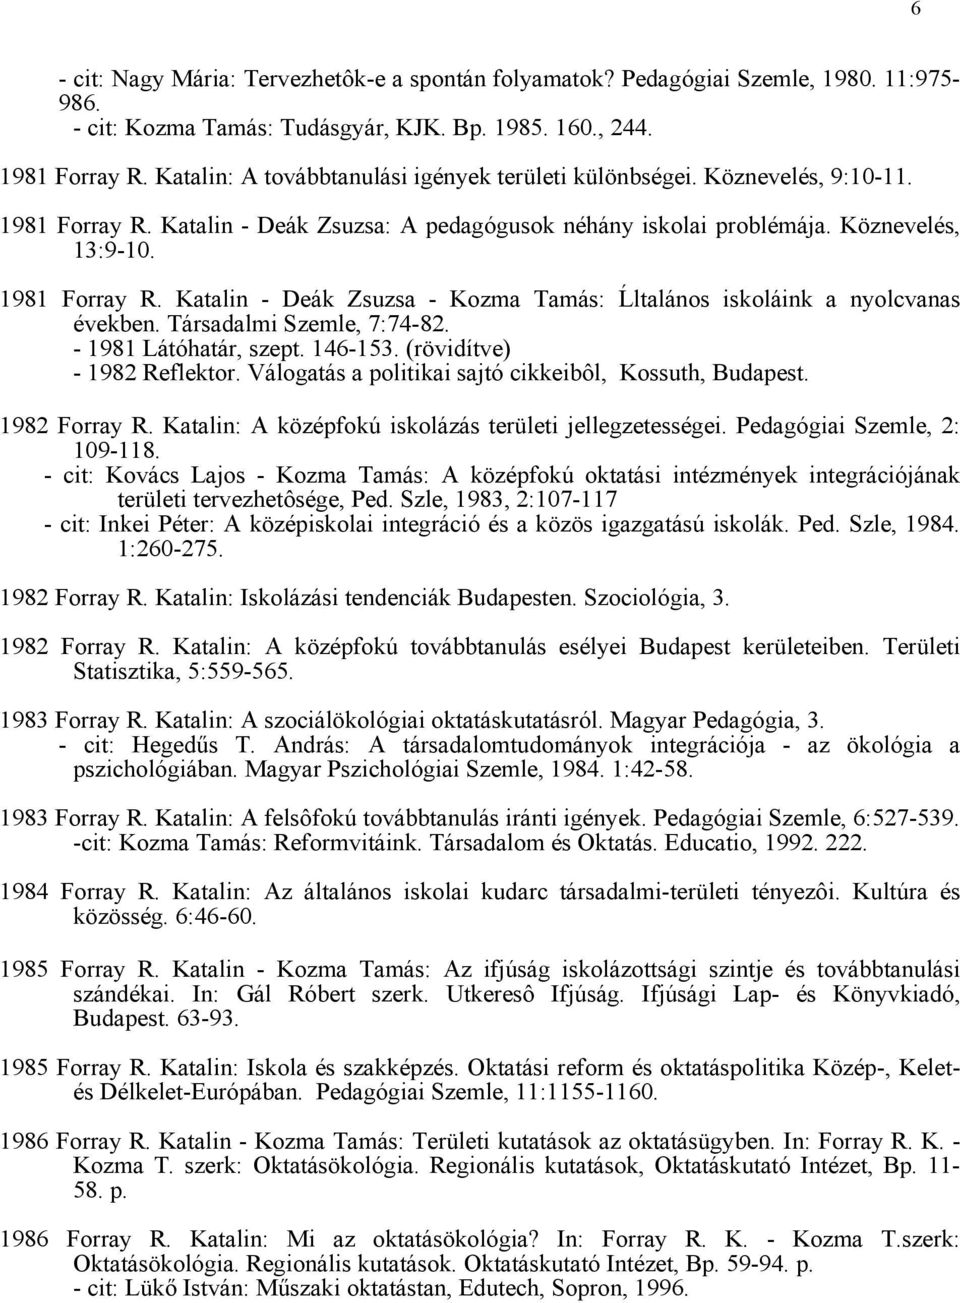 1987 Forray R. Katalin - Kozma Tamás szerk.: Az oktatás fejlesztése Komárom  megyében. Oktatáskutató Intézet, Budapest. 528 p. - PDF Ingyenes letöltés